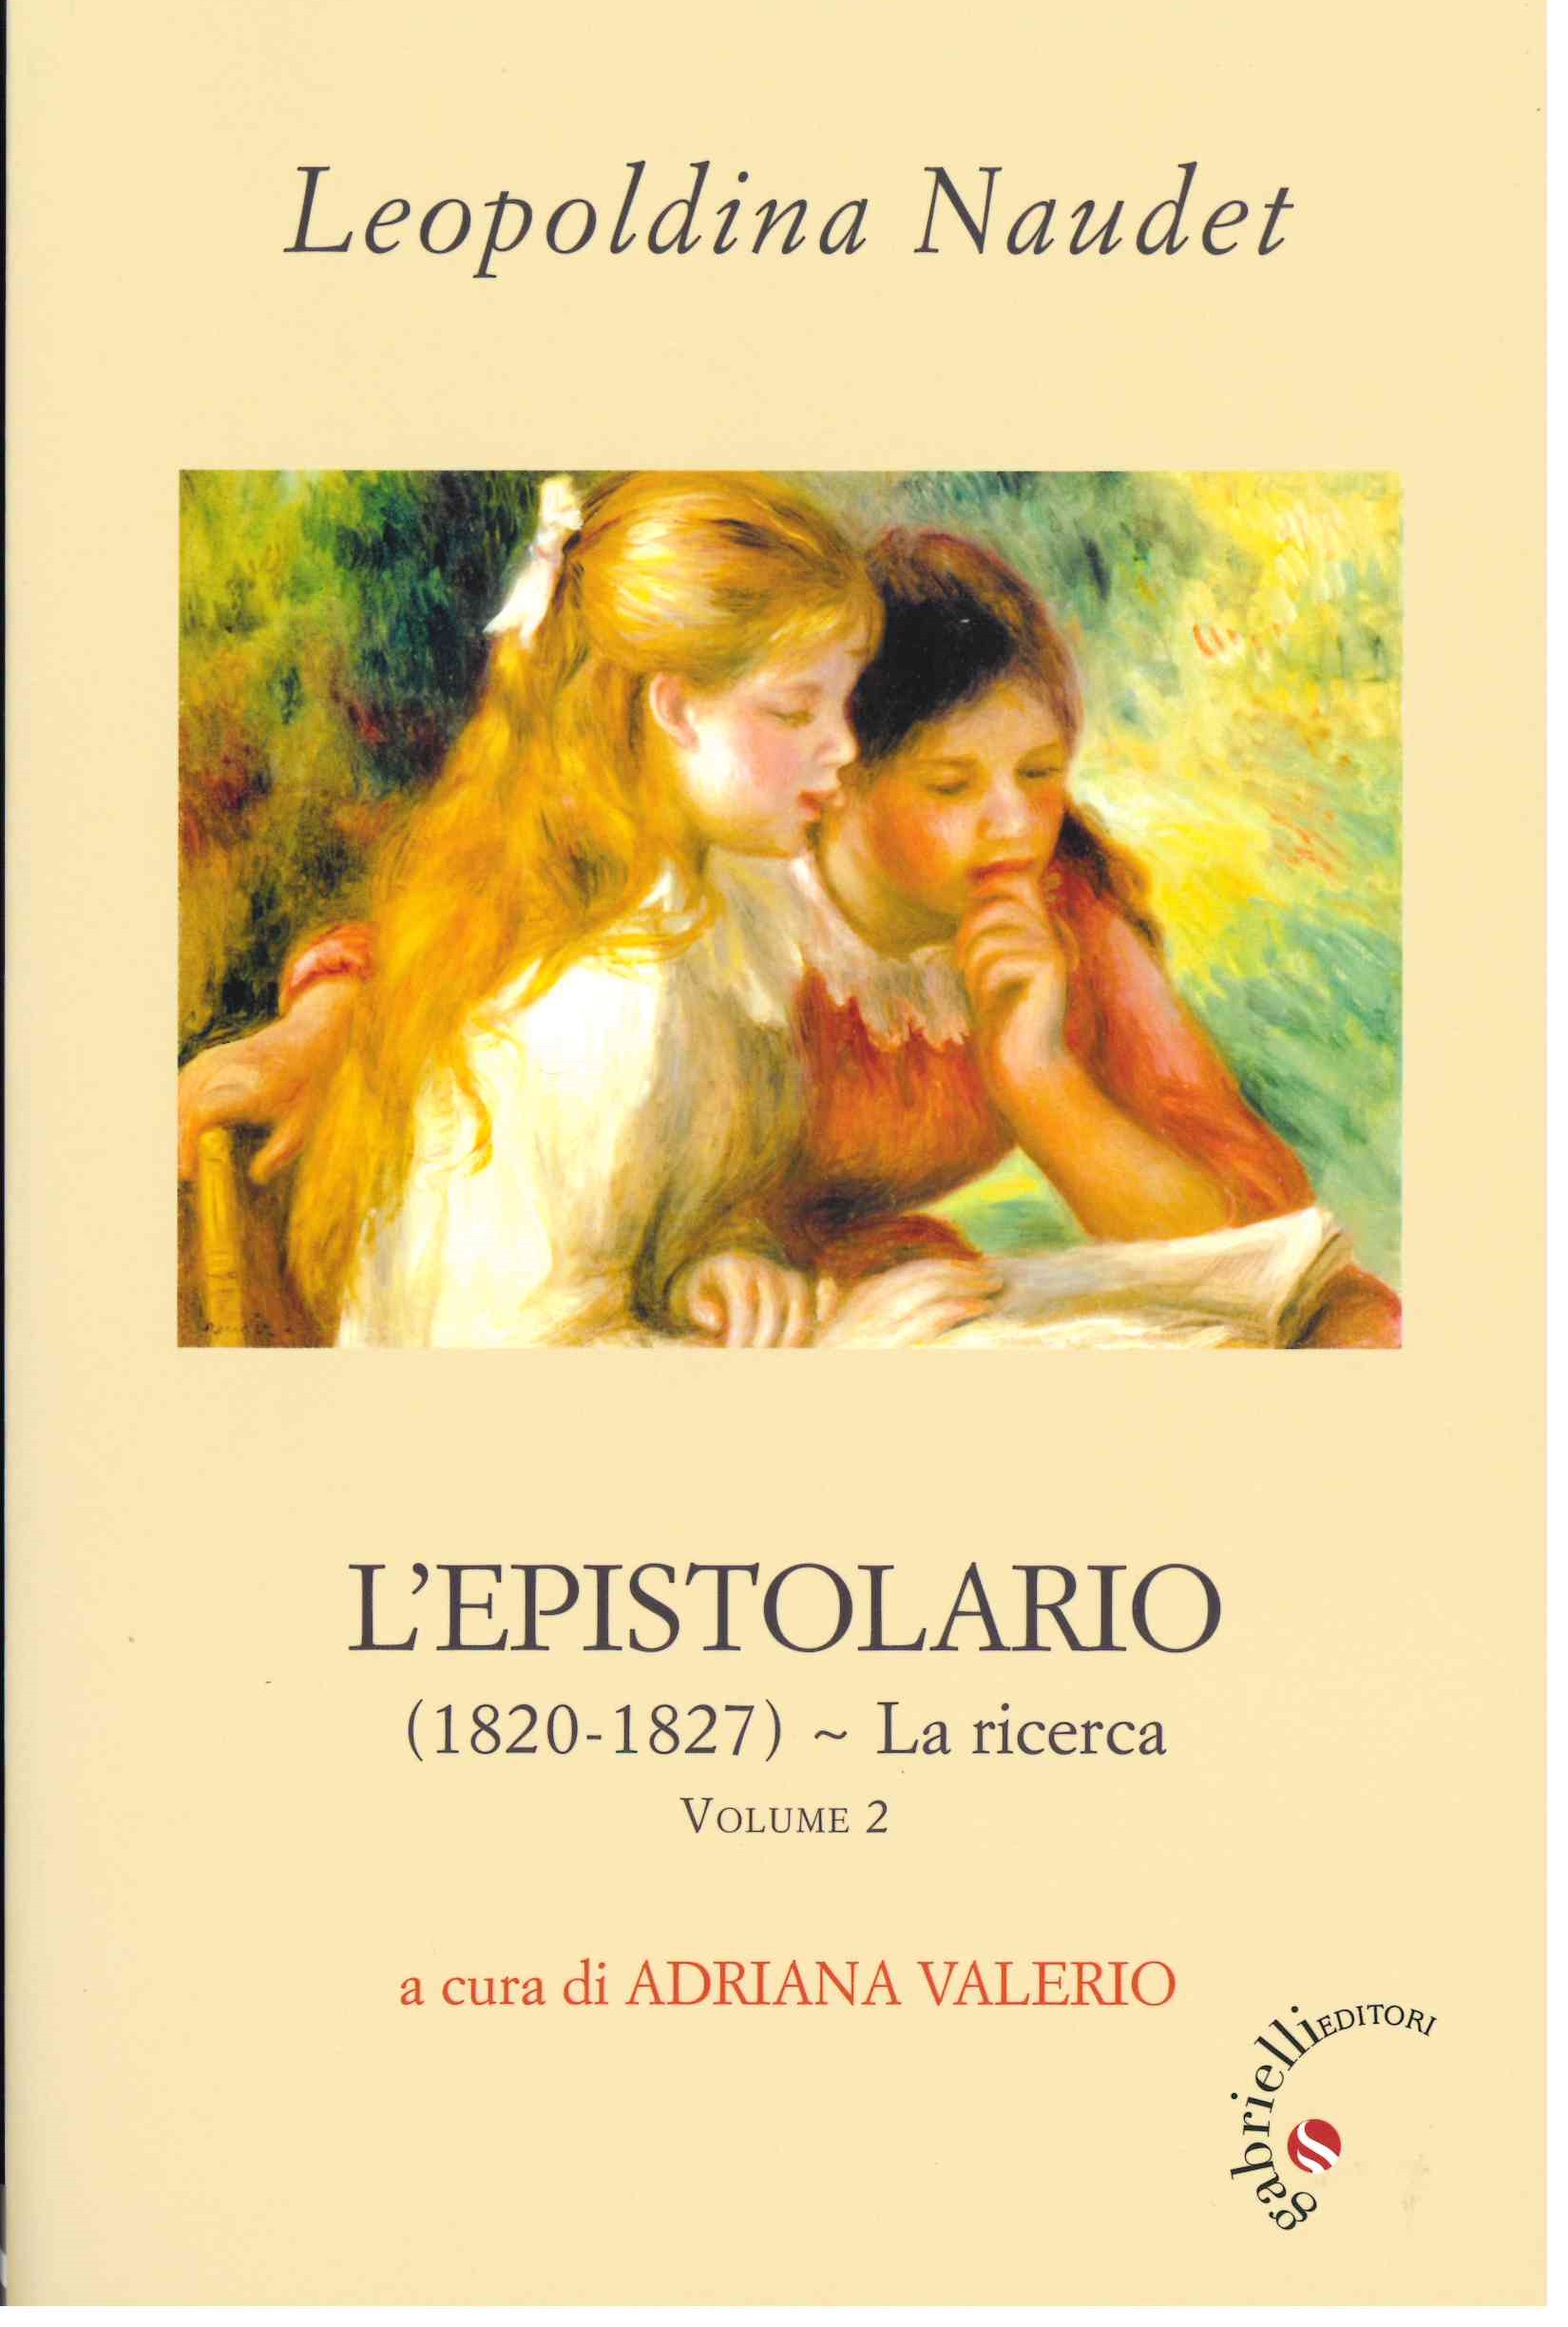 LEOPOLDINA NAUDET, L'EPISTOLARIO a cura di ADRIANA VALERIO Volume 2